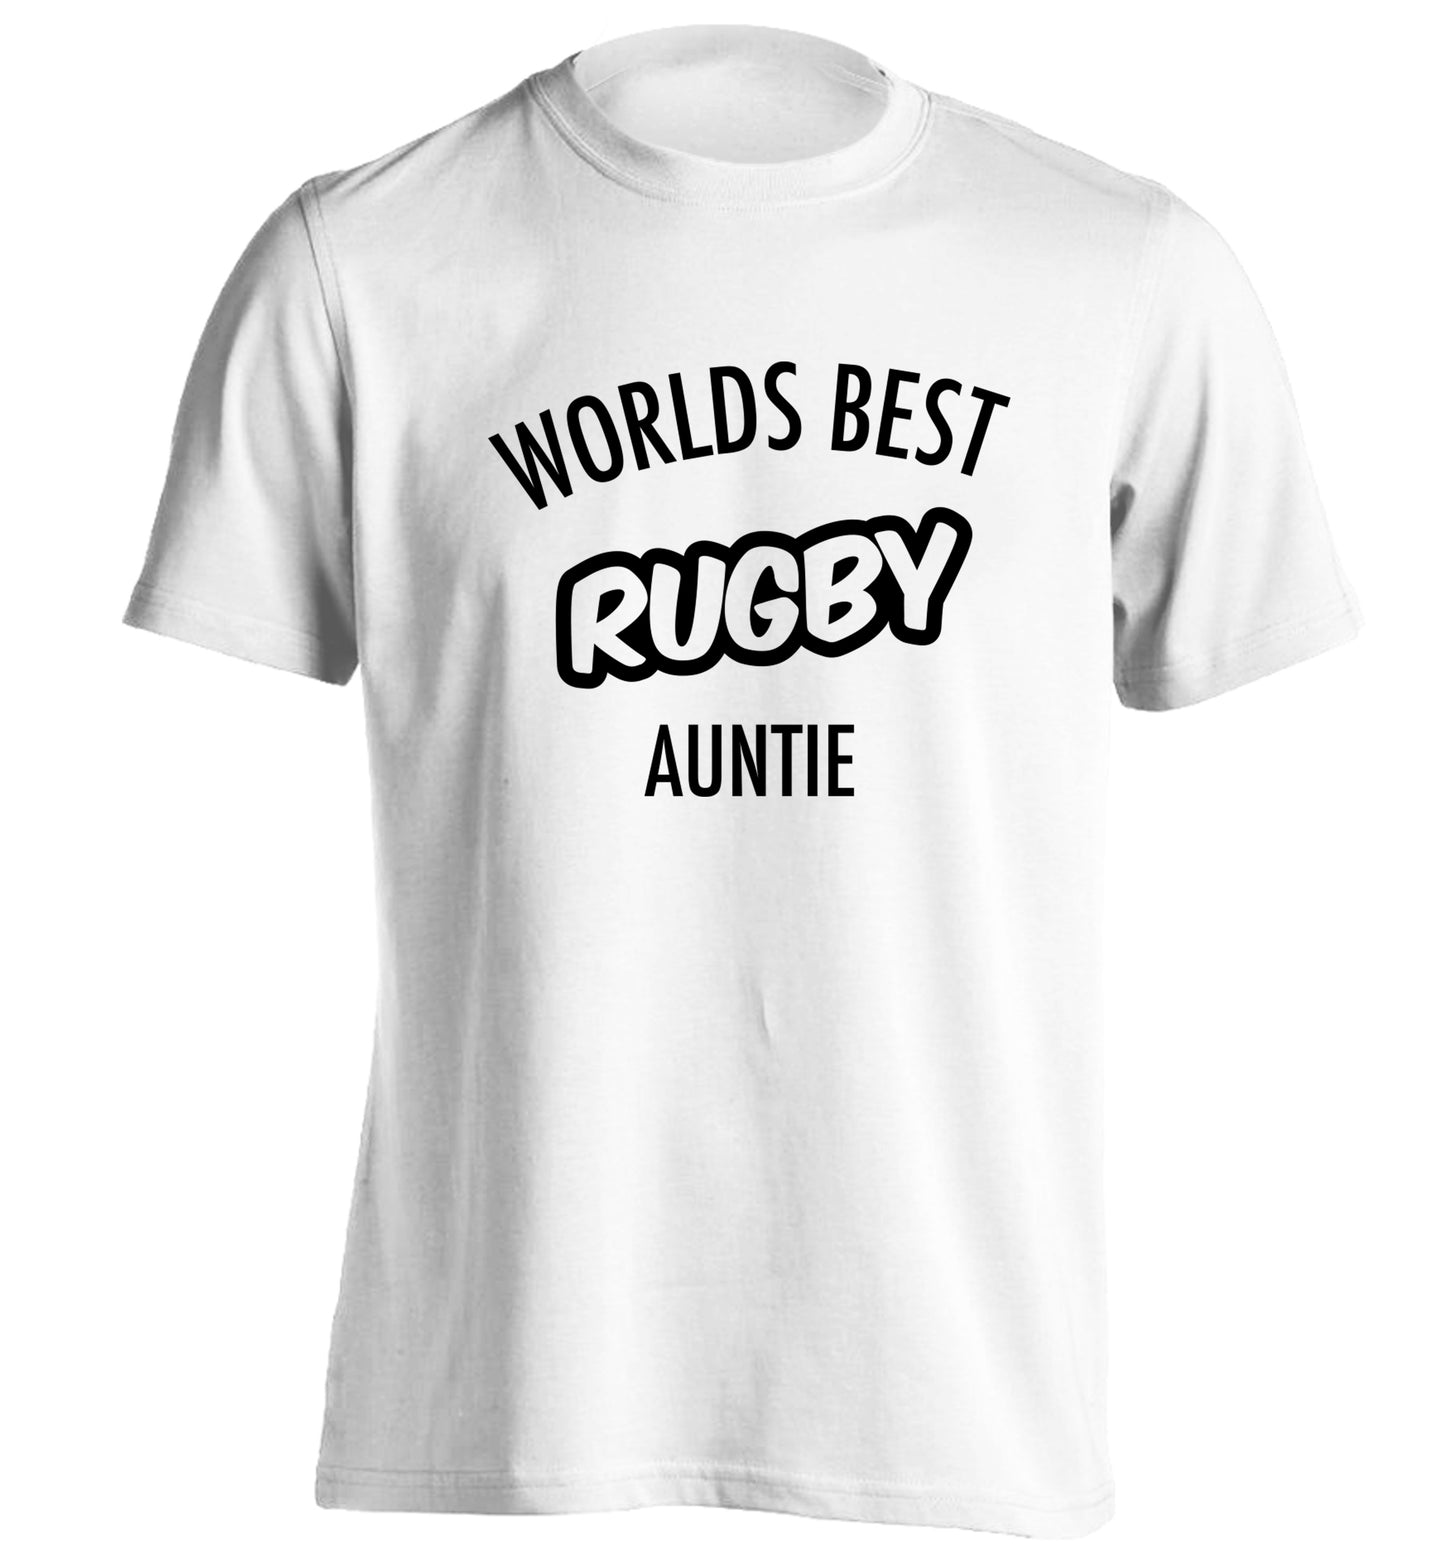 Worlds best rugby auntie adults unisex white Tshirt 2XL